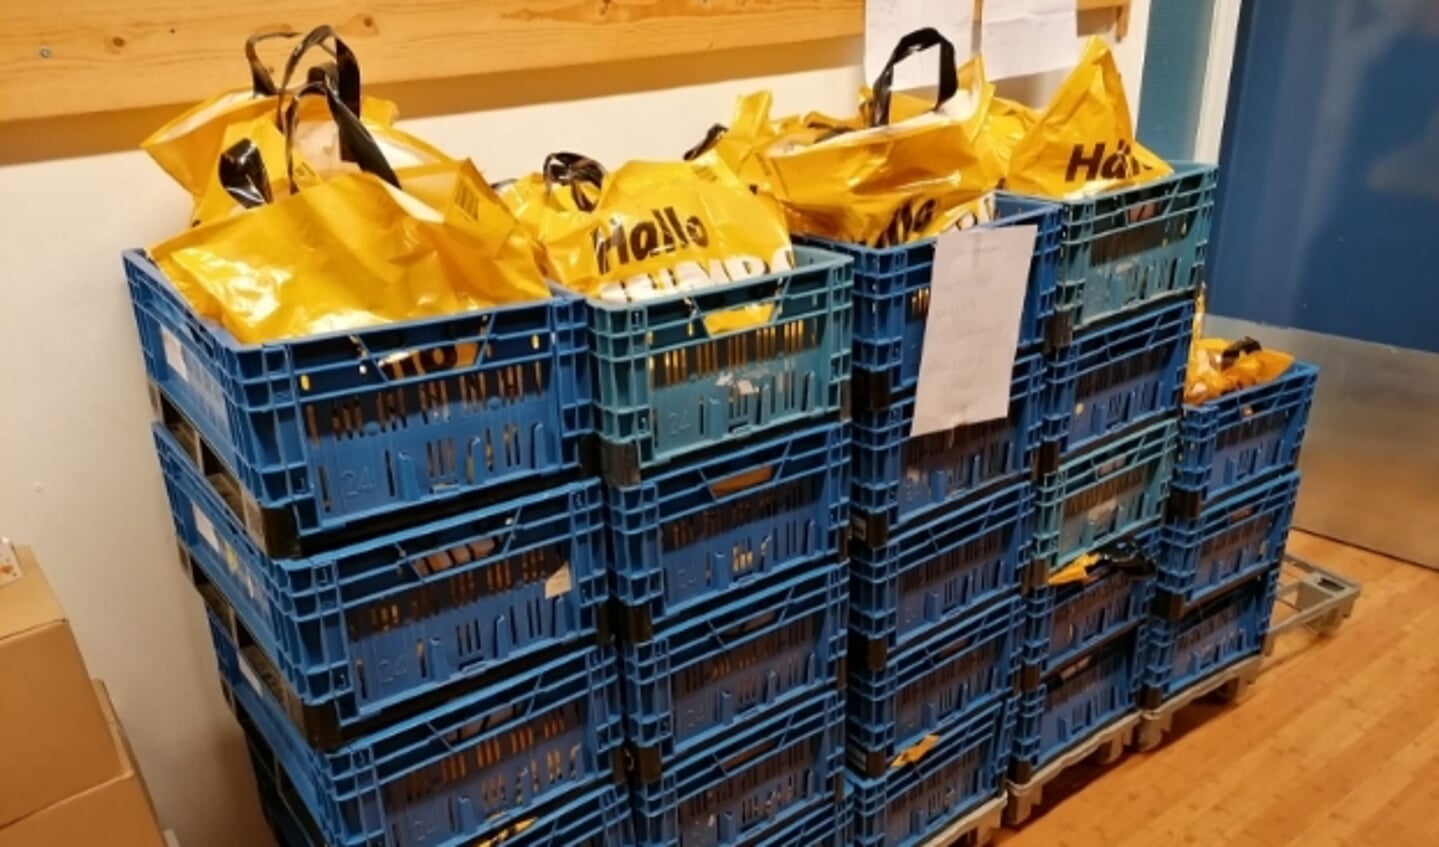 De voedselpakketten zijn afgeleverd bij De Voedselbank